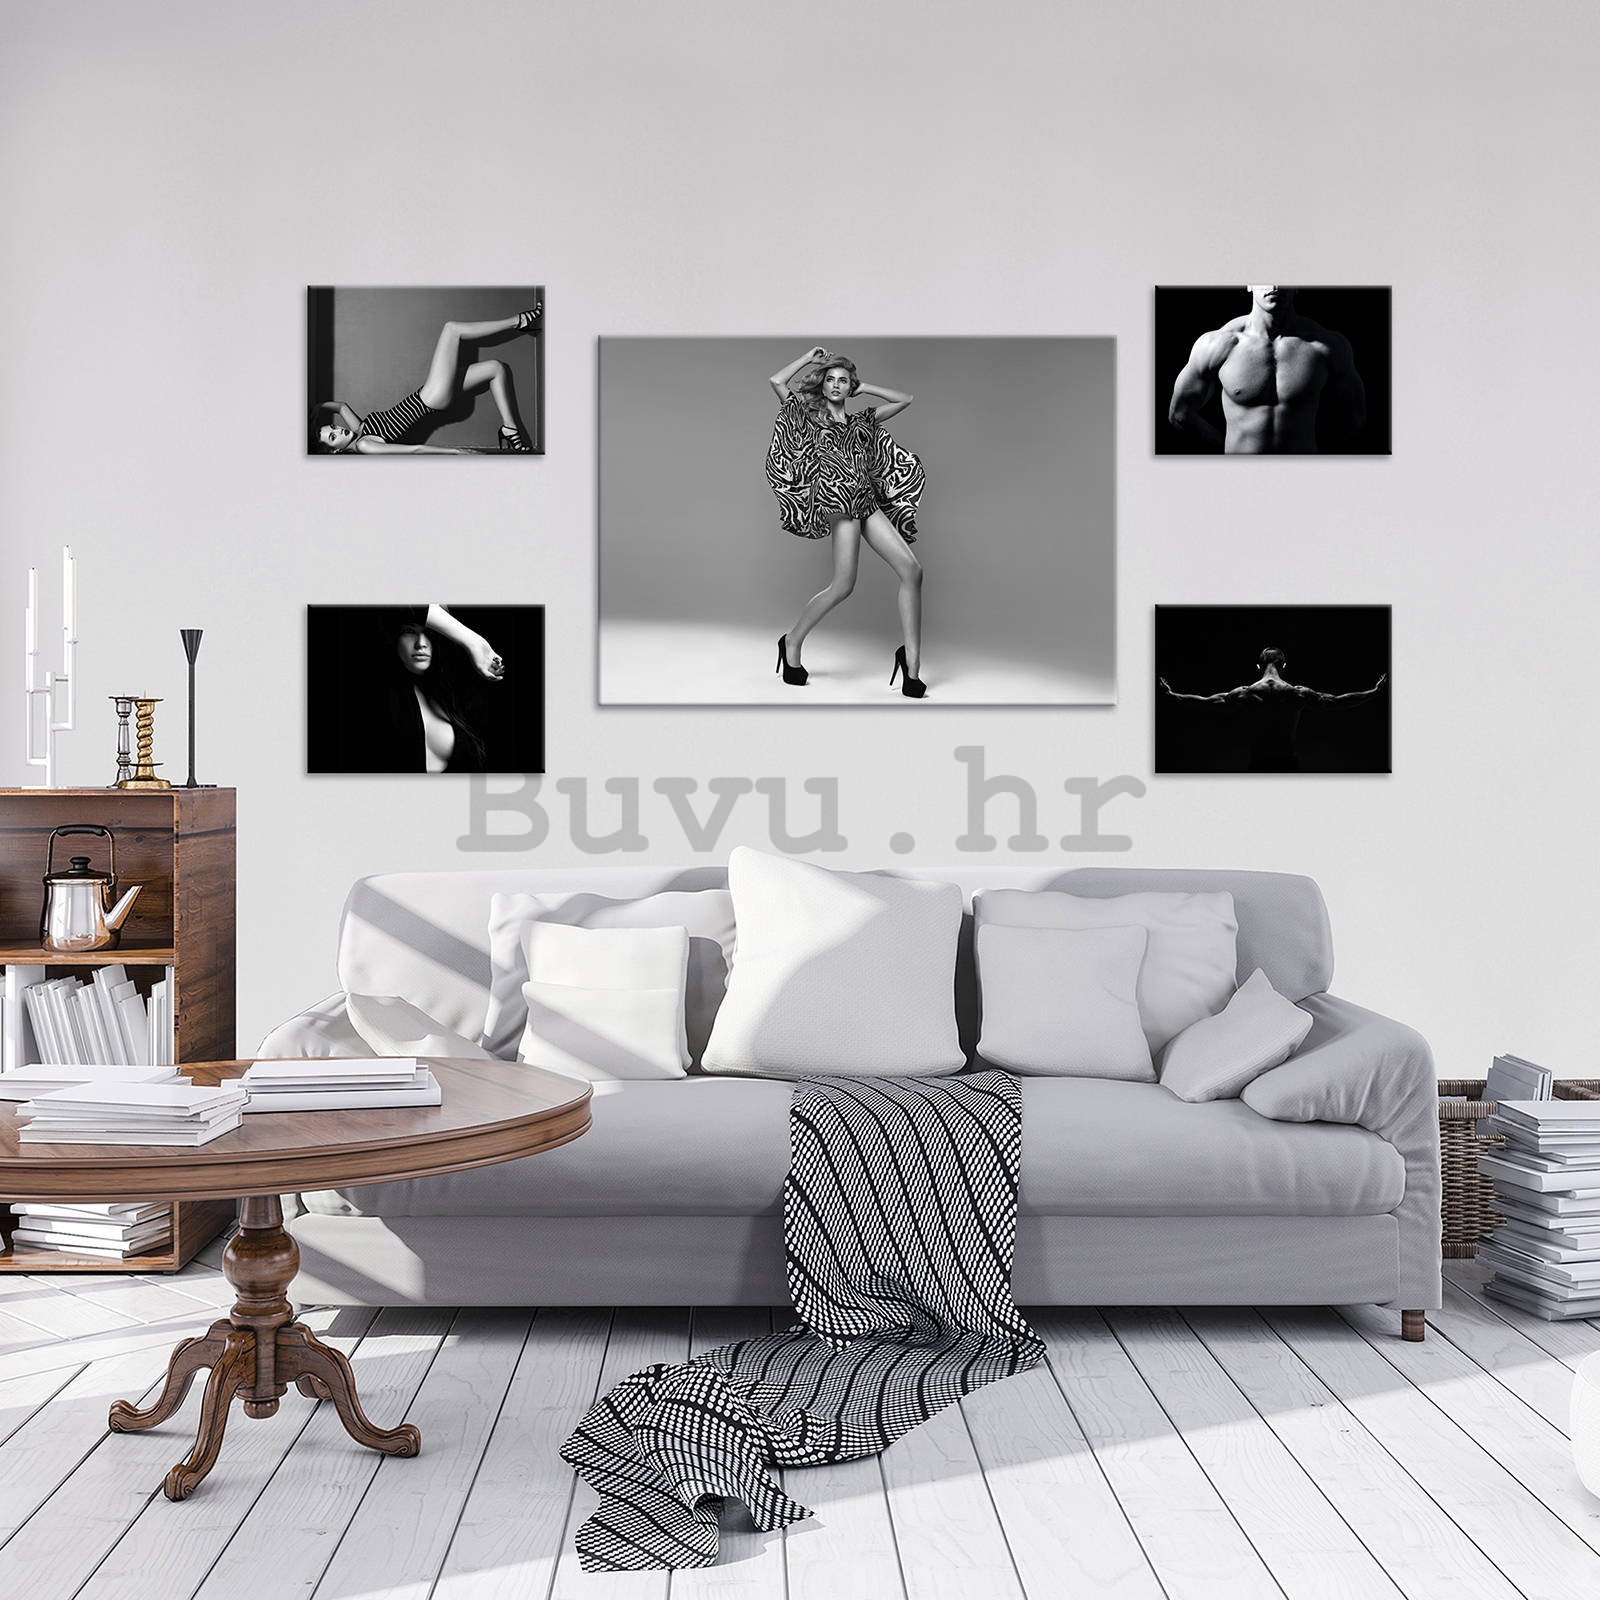 Slika na platnu: Crno-bijele poze (1) - set 1kom 70x50 cm i 4kom 32,4x22,8 cm